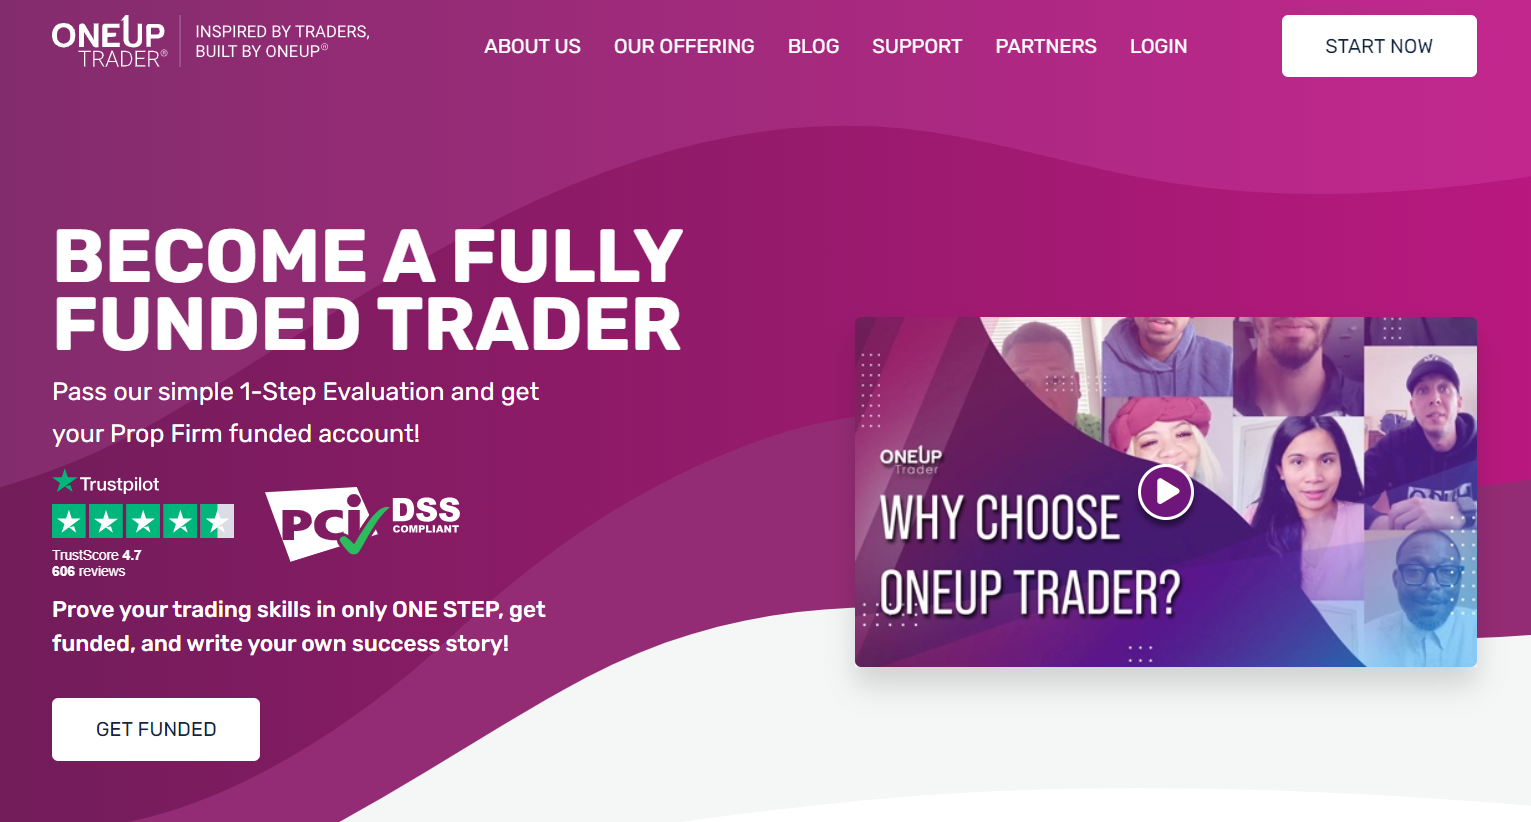 Descripción general de la cuenta de usuario de OneUp Trader: Comenzar ahora